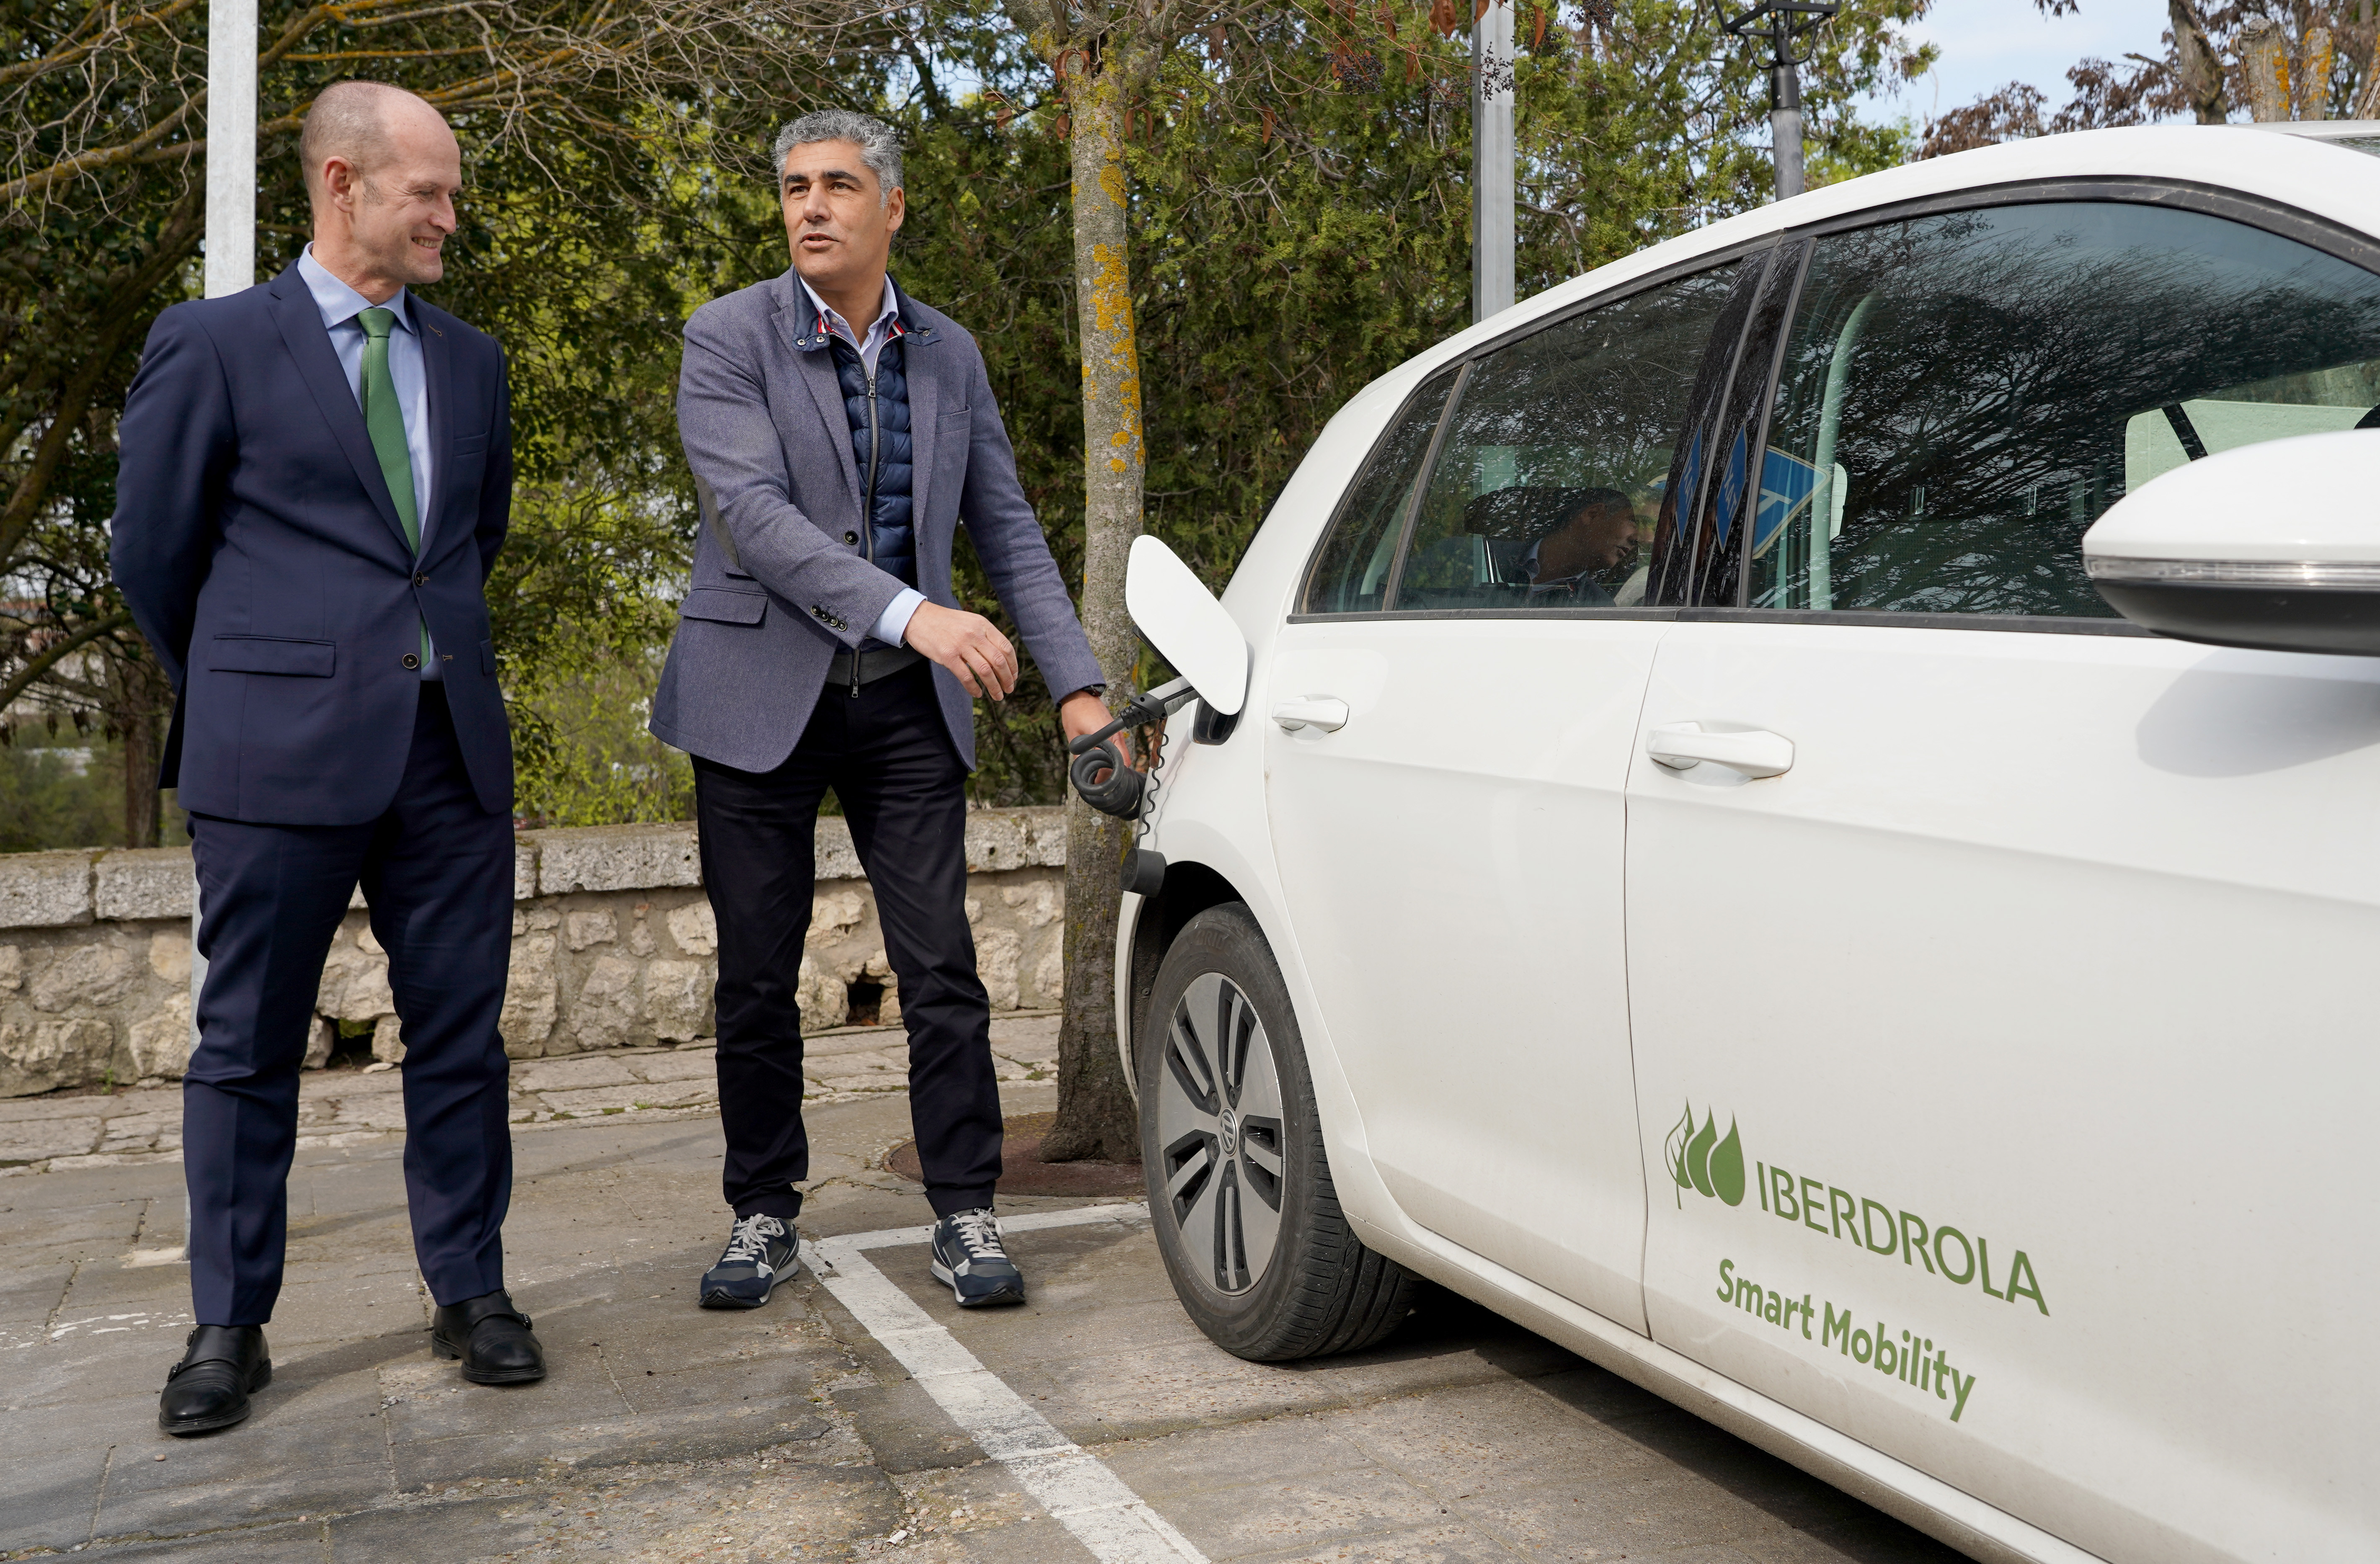 Iberdrola prevé duplicar este año los puntos de recarga de vehículos eléctricos en Castilla y León hasta alcanzar los 400